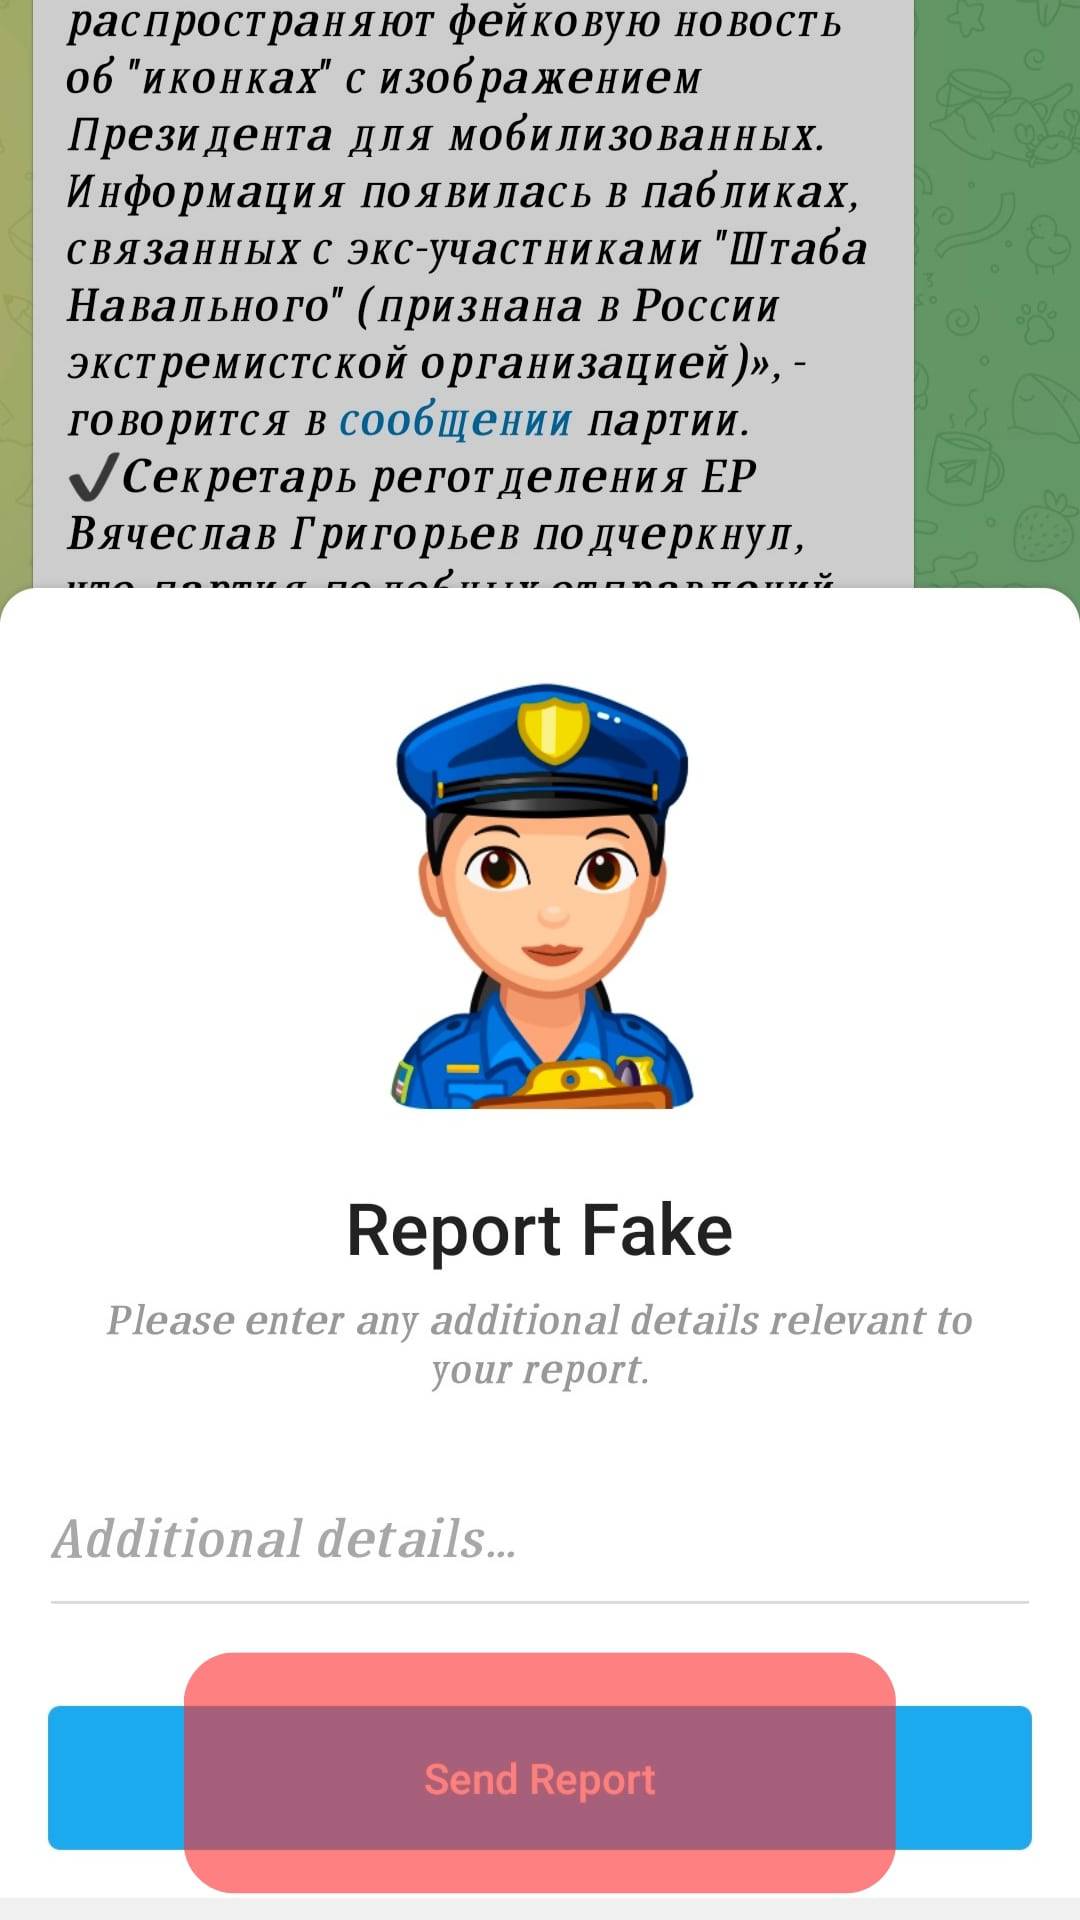 Send Report Button